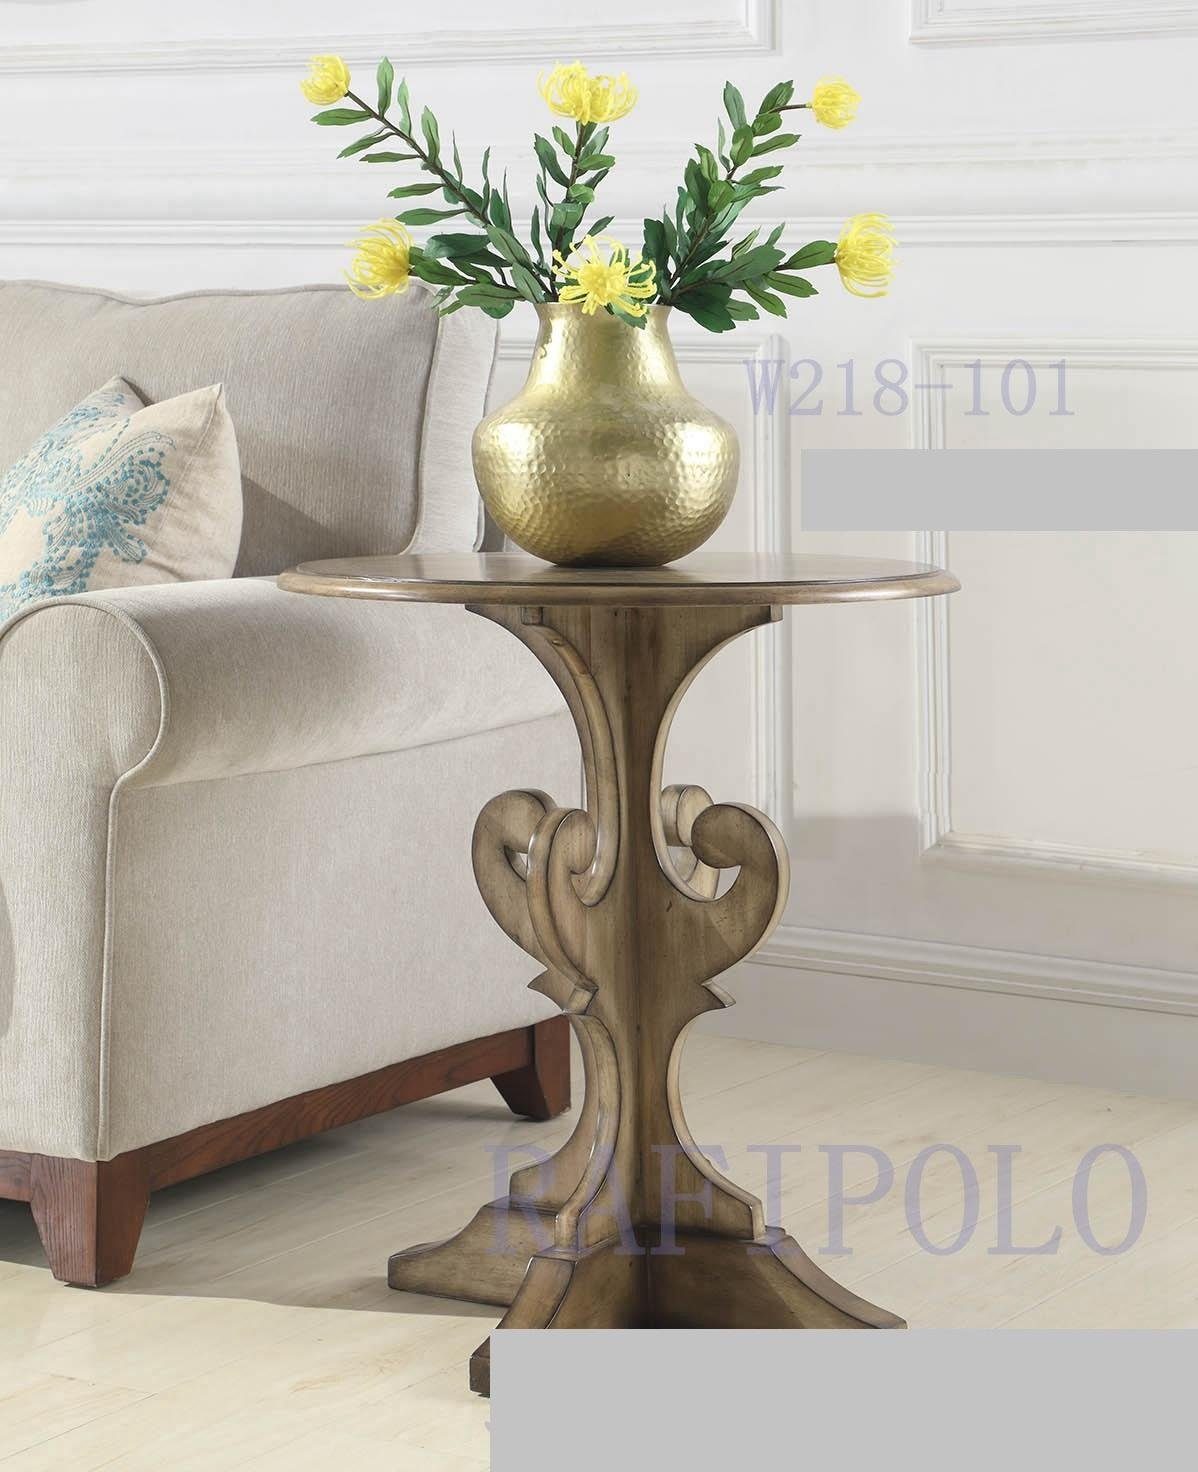 Möbel in Holz Tisch Beistelltisch Couch (Beistelltisch), Europe Sofa Landhaus Design Beistell Rund JVmoebel Made Tische